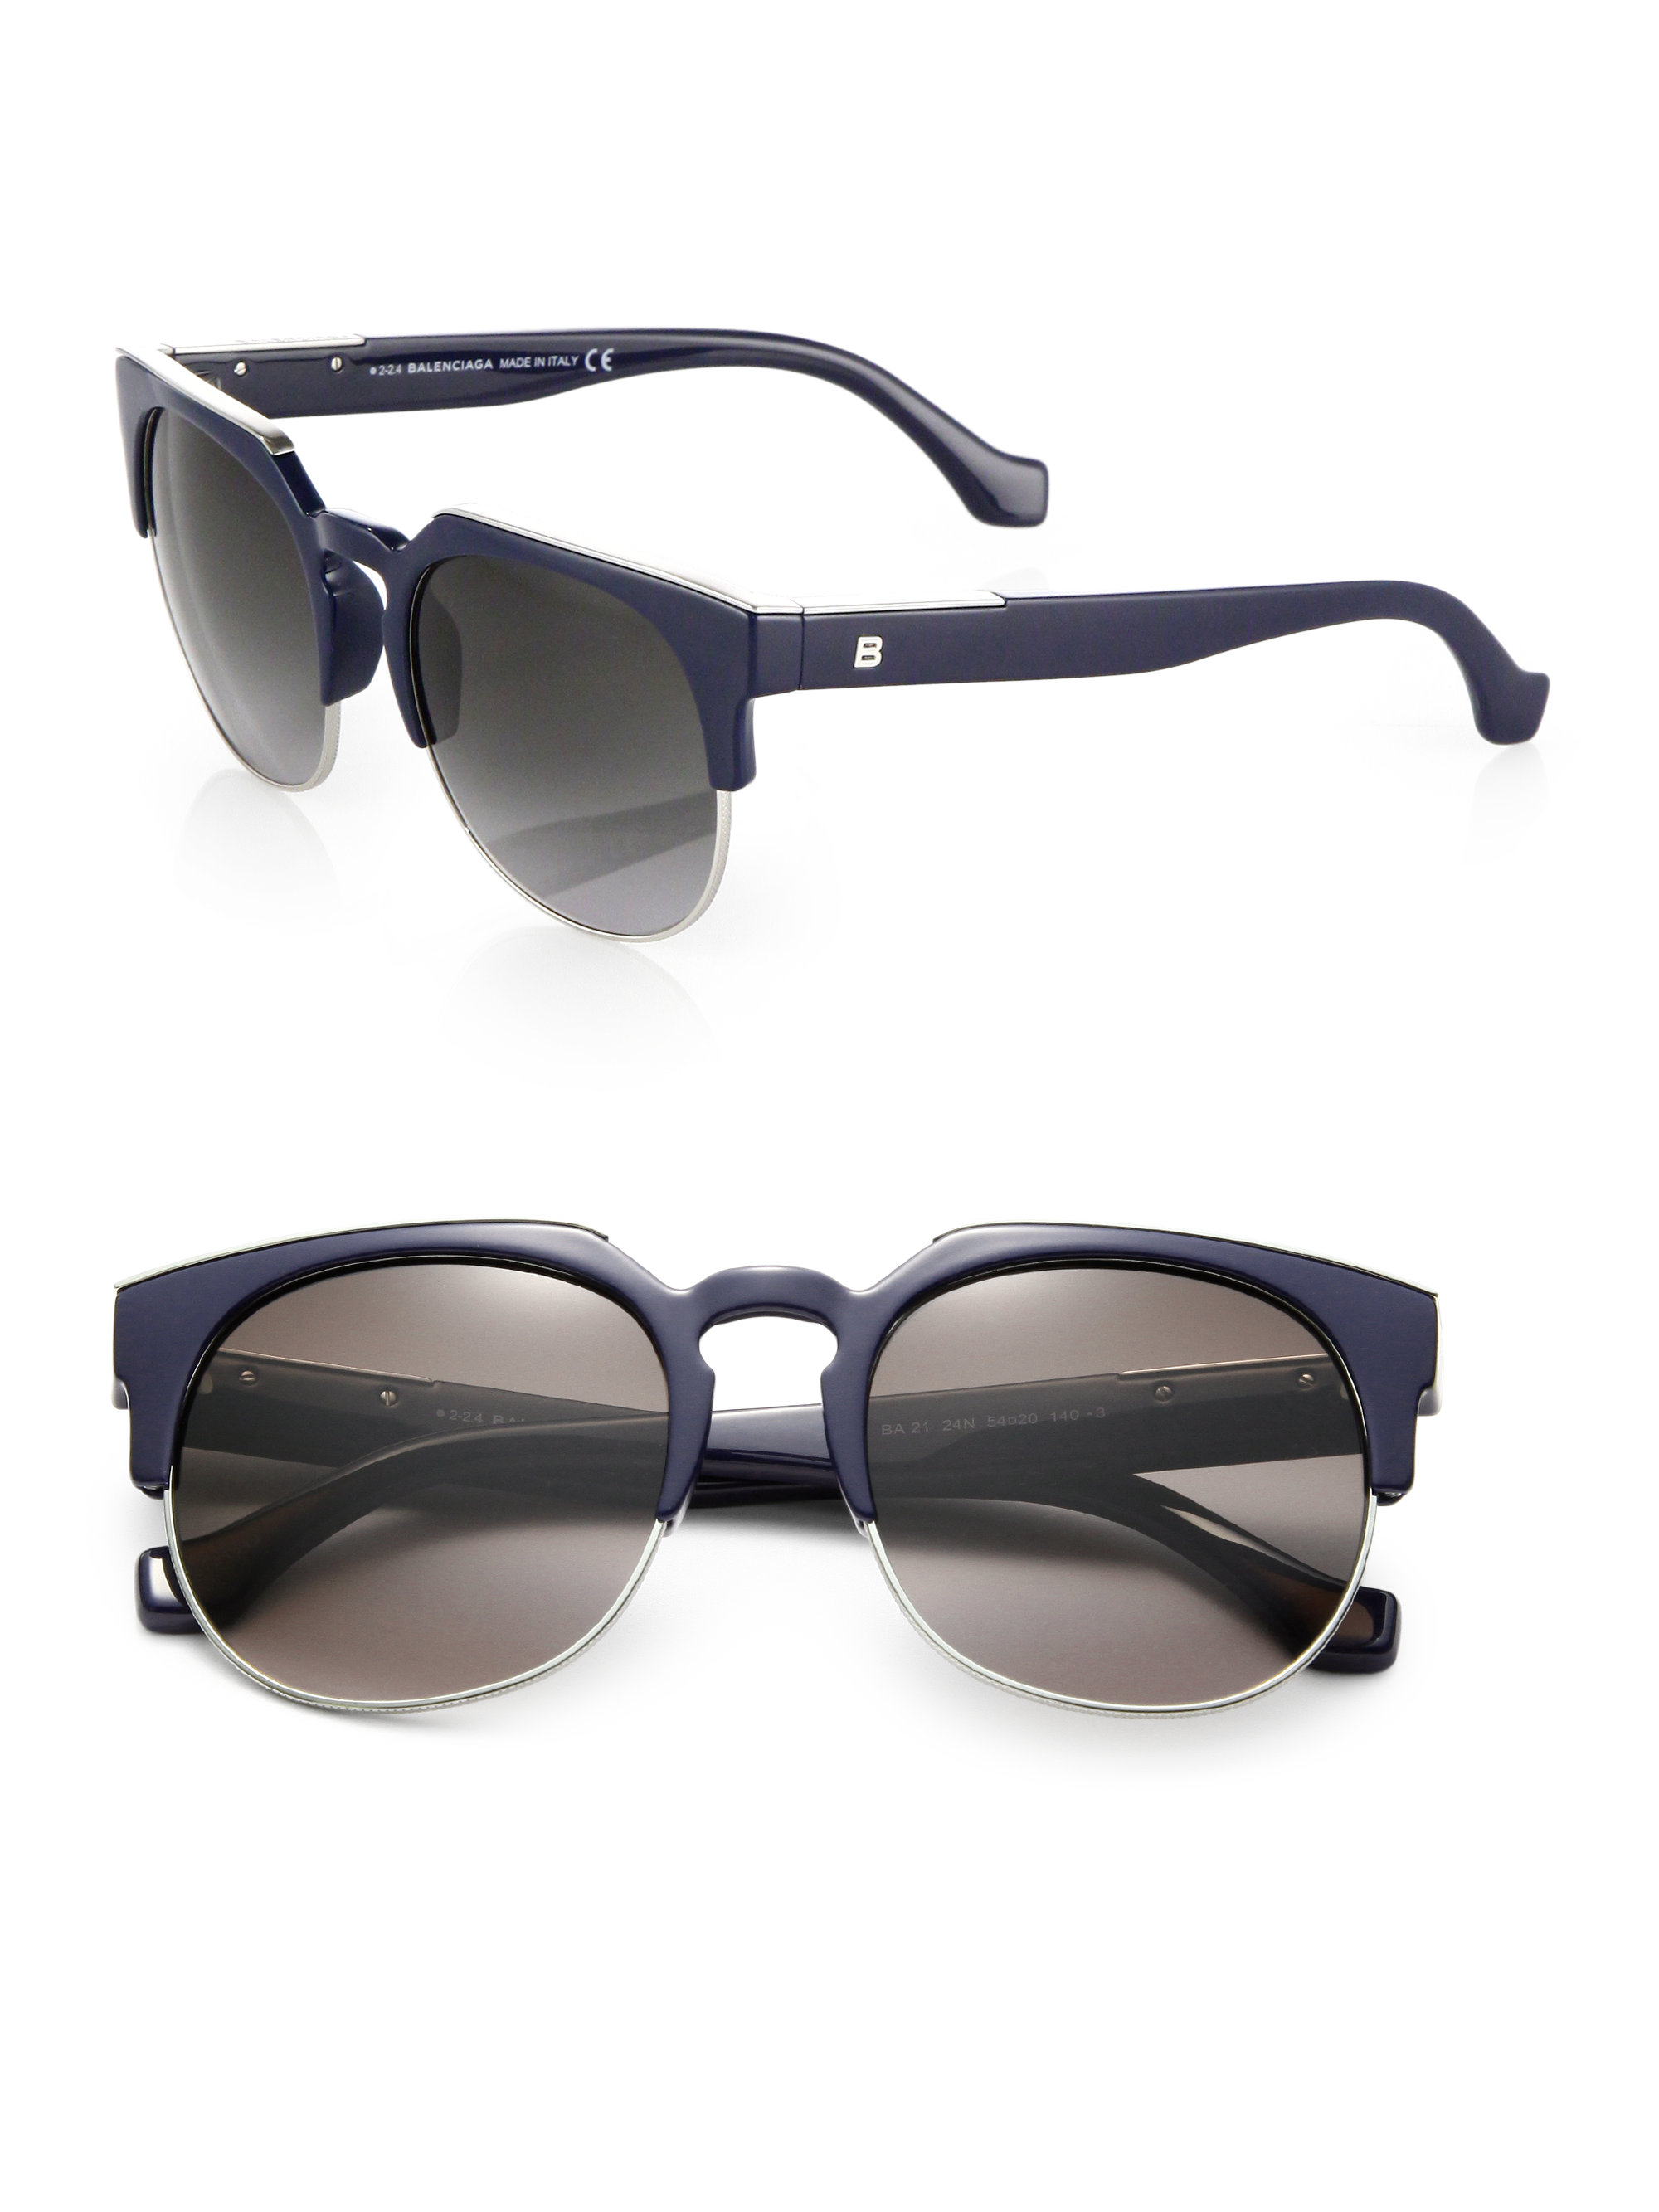 Lyst - Balenciaga Retro Round Sunglasses in Blue